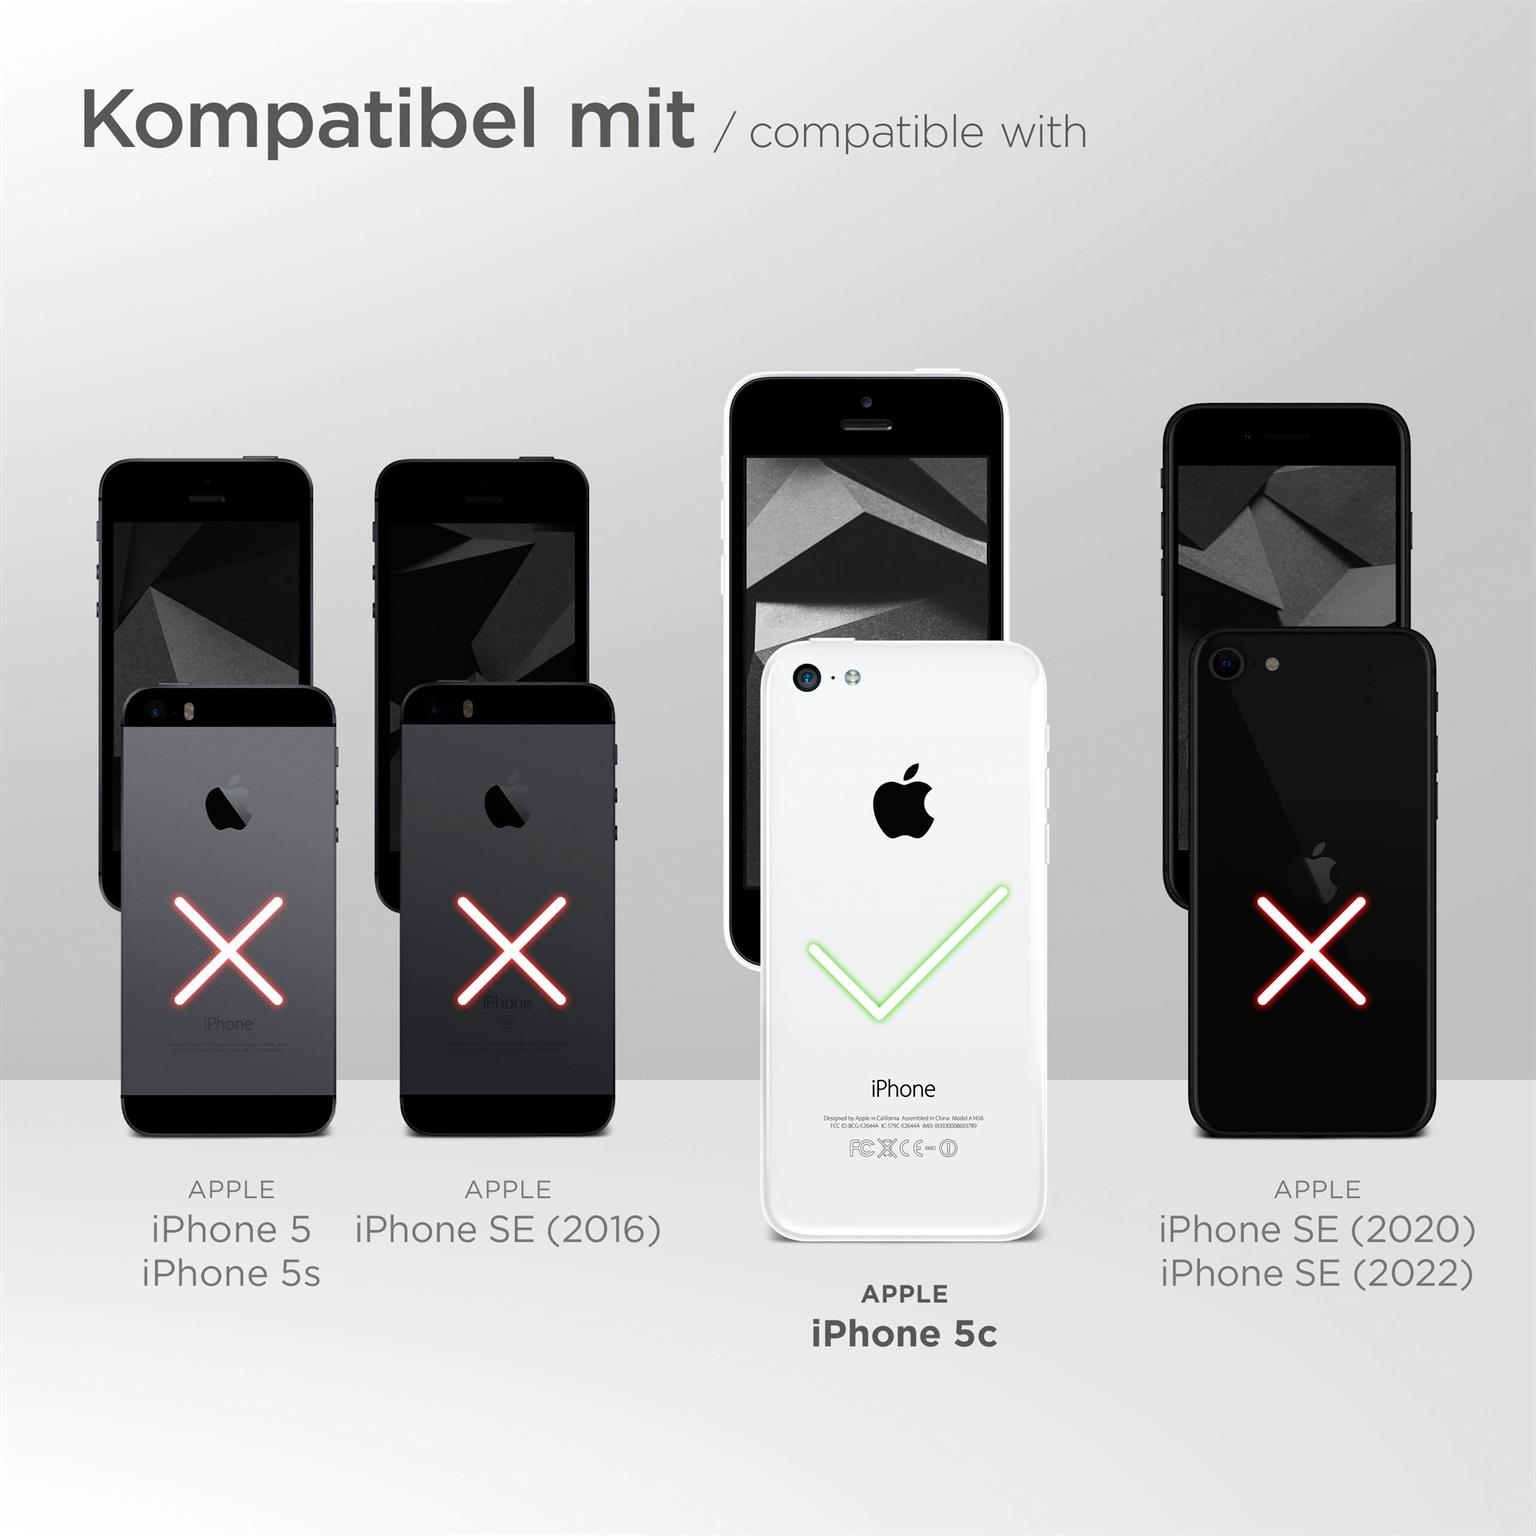 ONEFLOW Zeal Case für Apple iPhone 5c – Handy Gürteltasche aus PU Leder mit Kartenfächern